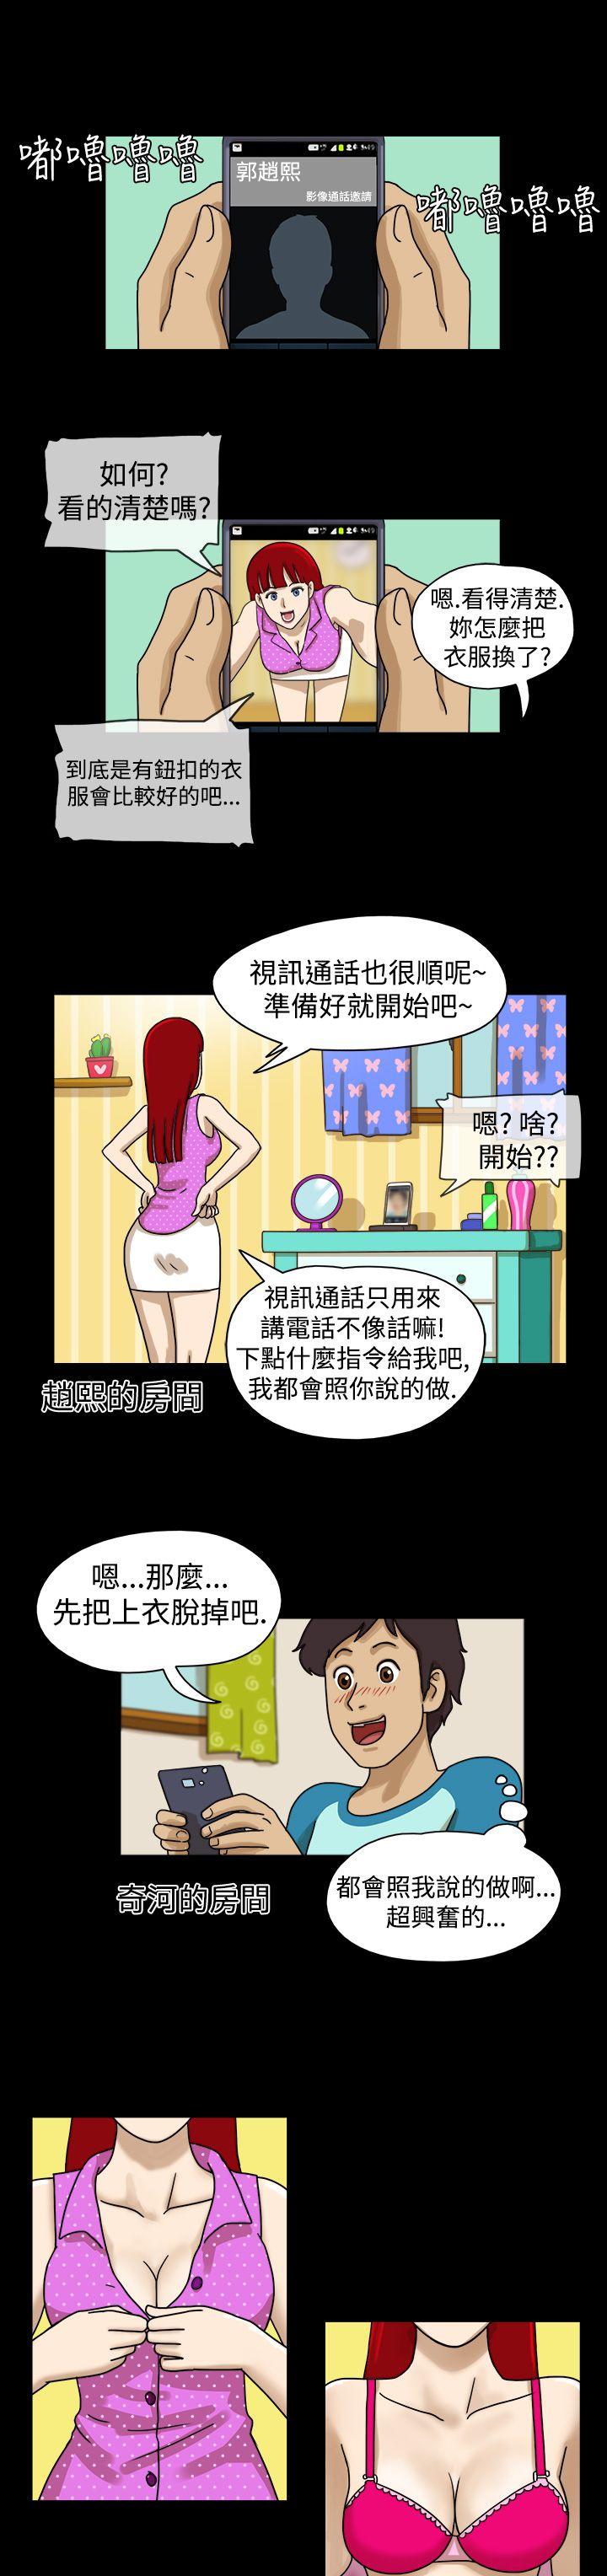 韩国污漫画 17種性幻想第一季 第3话 7